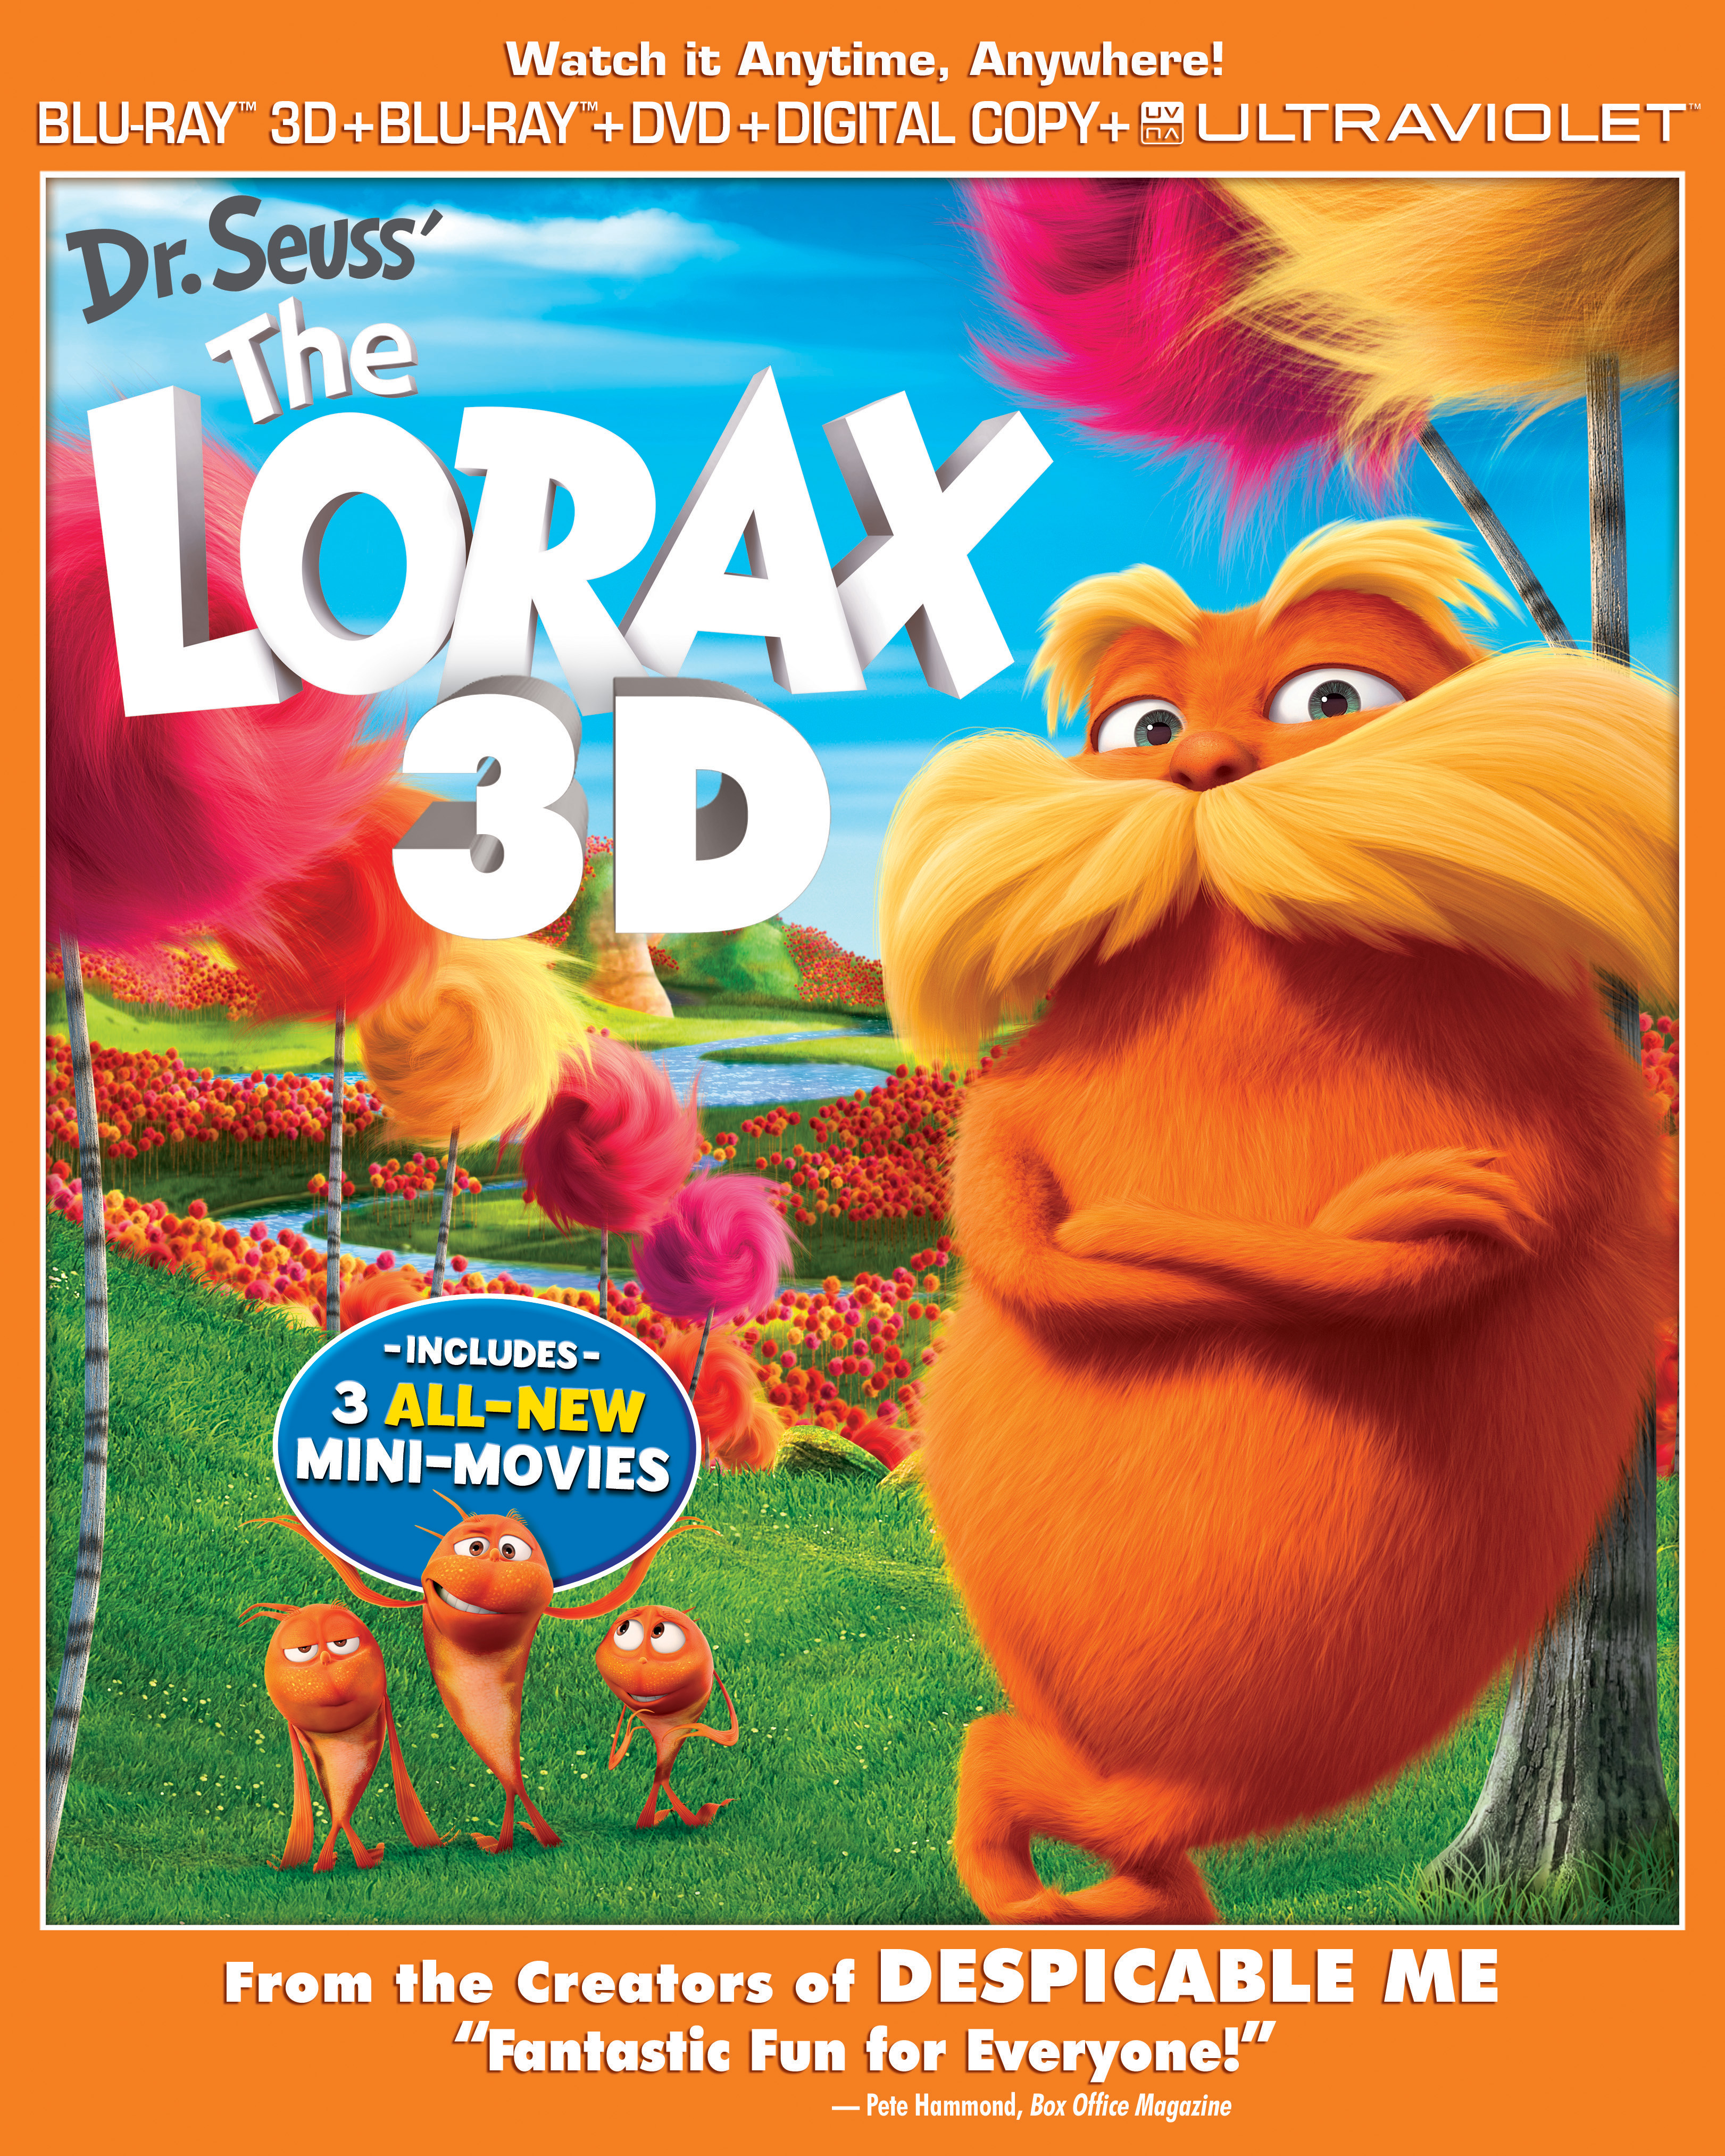 The Lorax Blu-ray Box Art 2D